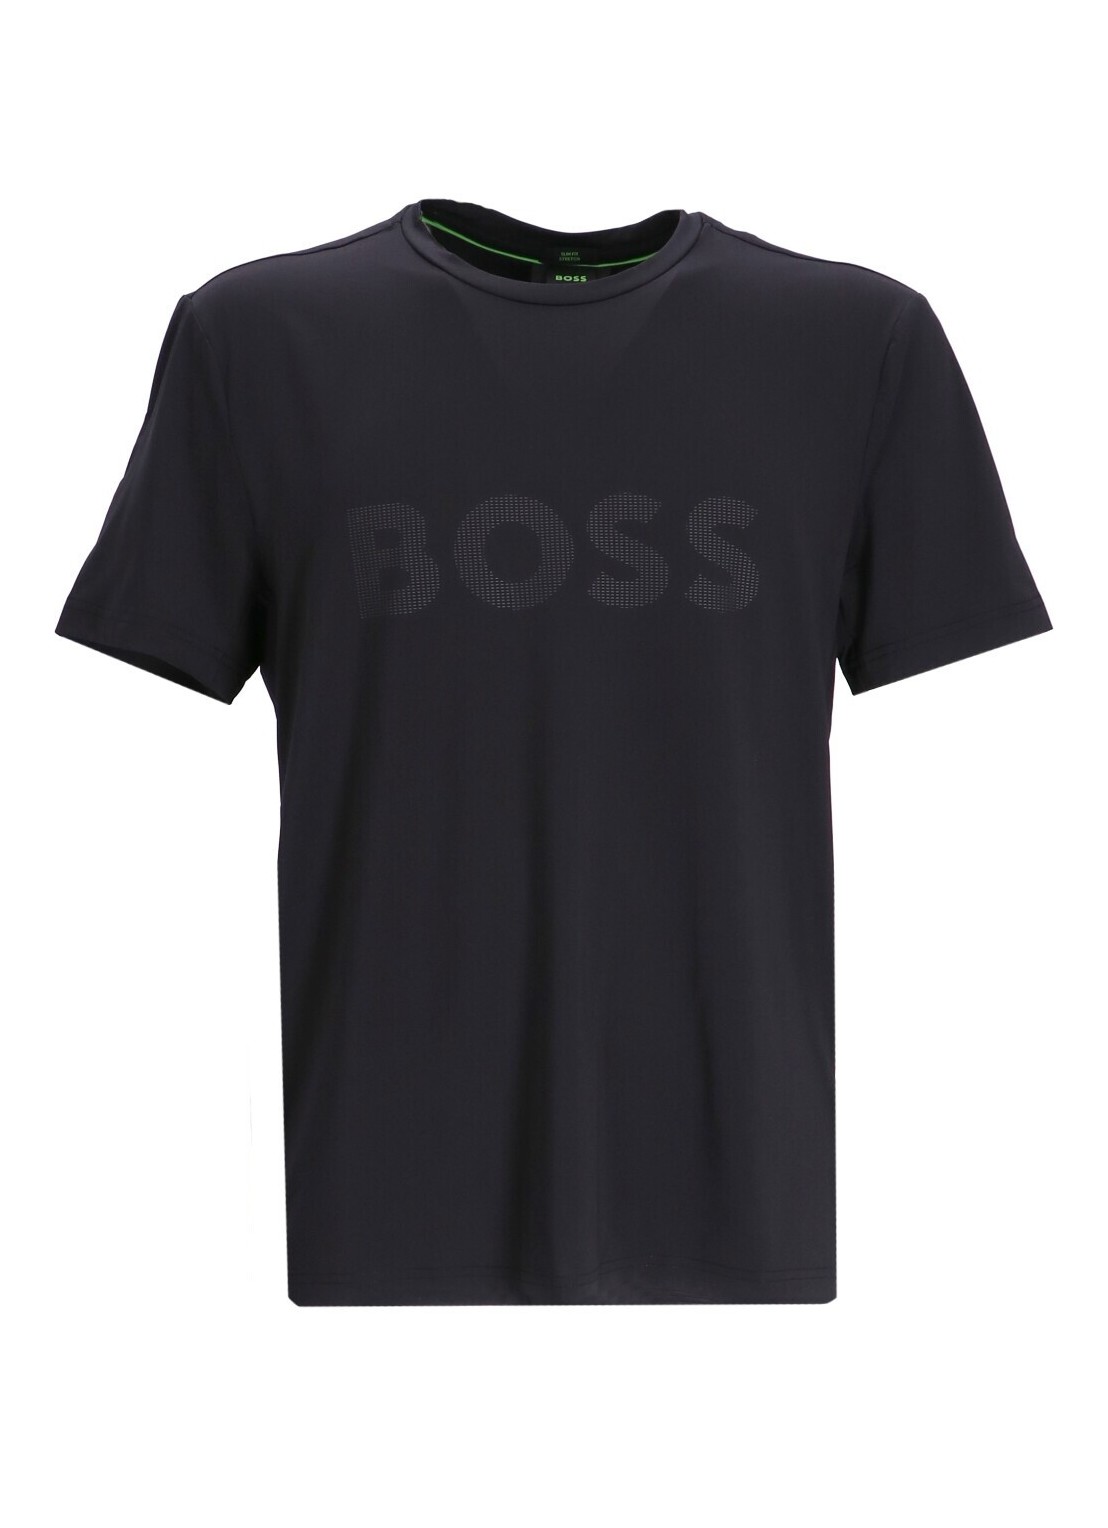 Camiseta boss t-shirt man tee active 50494339 001 talla negro
 